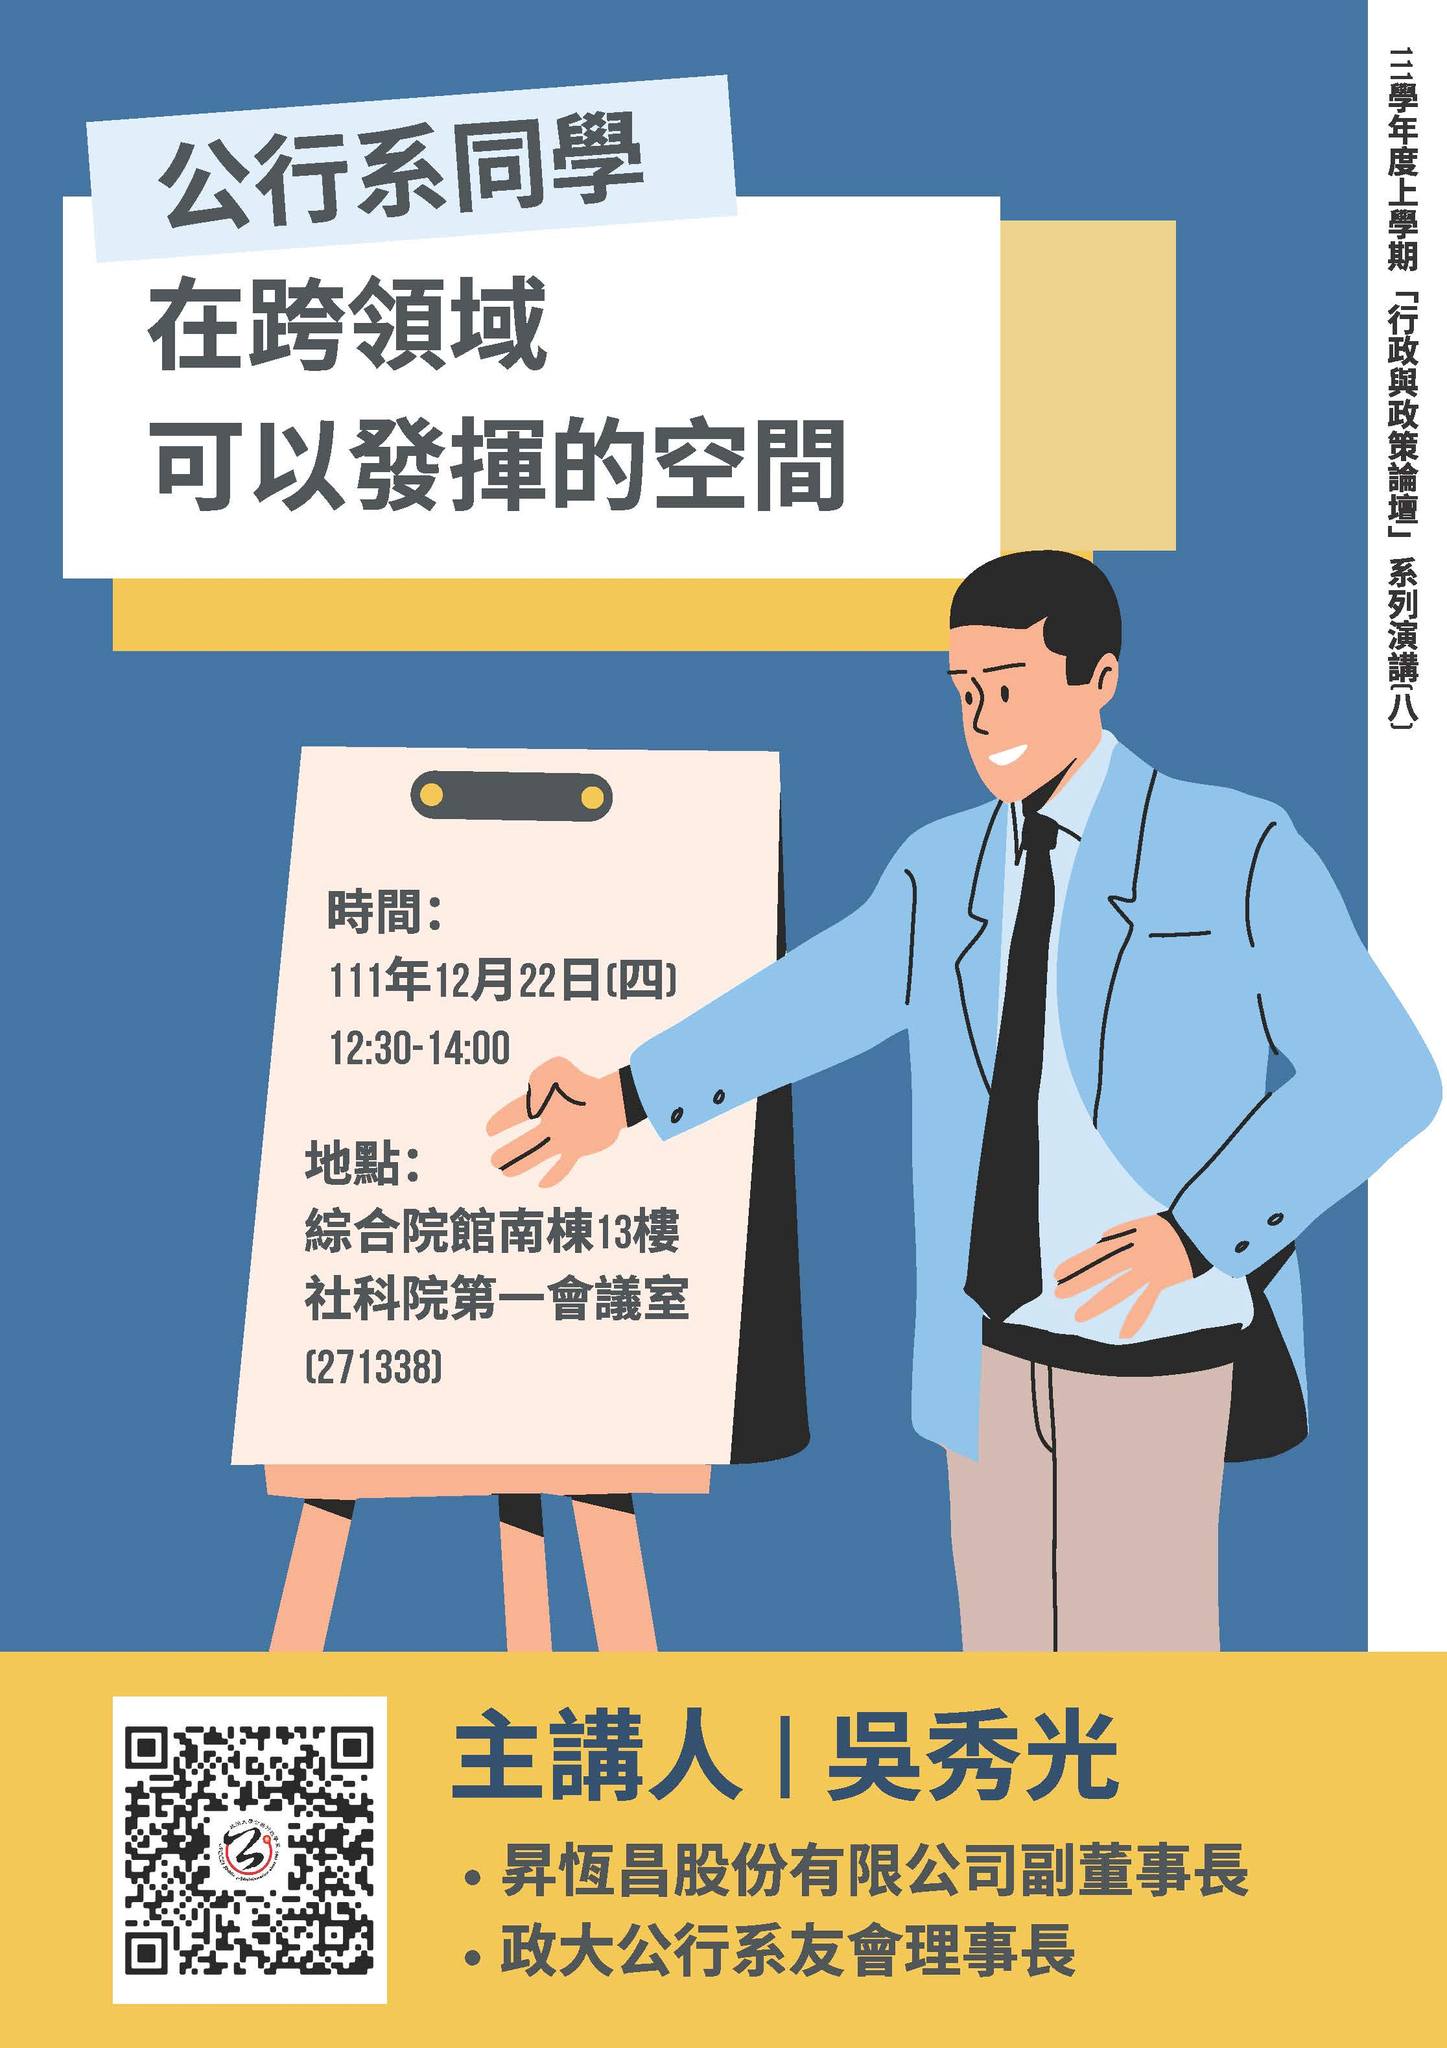 【學術】「行政與政策論壇」系列演講(八) 主講人：吳秀光副董事長